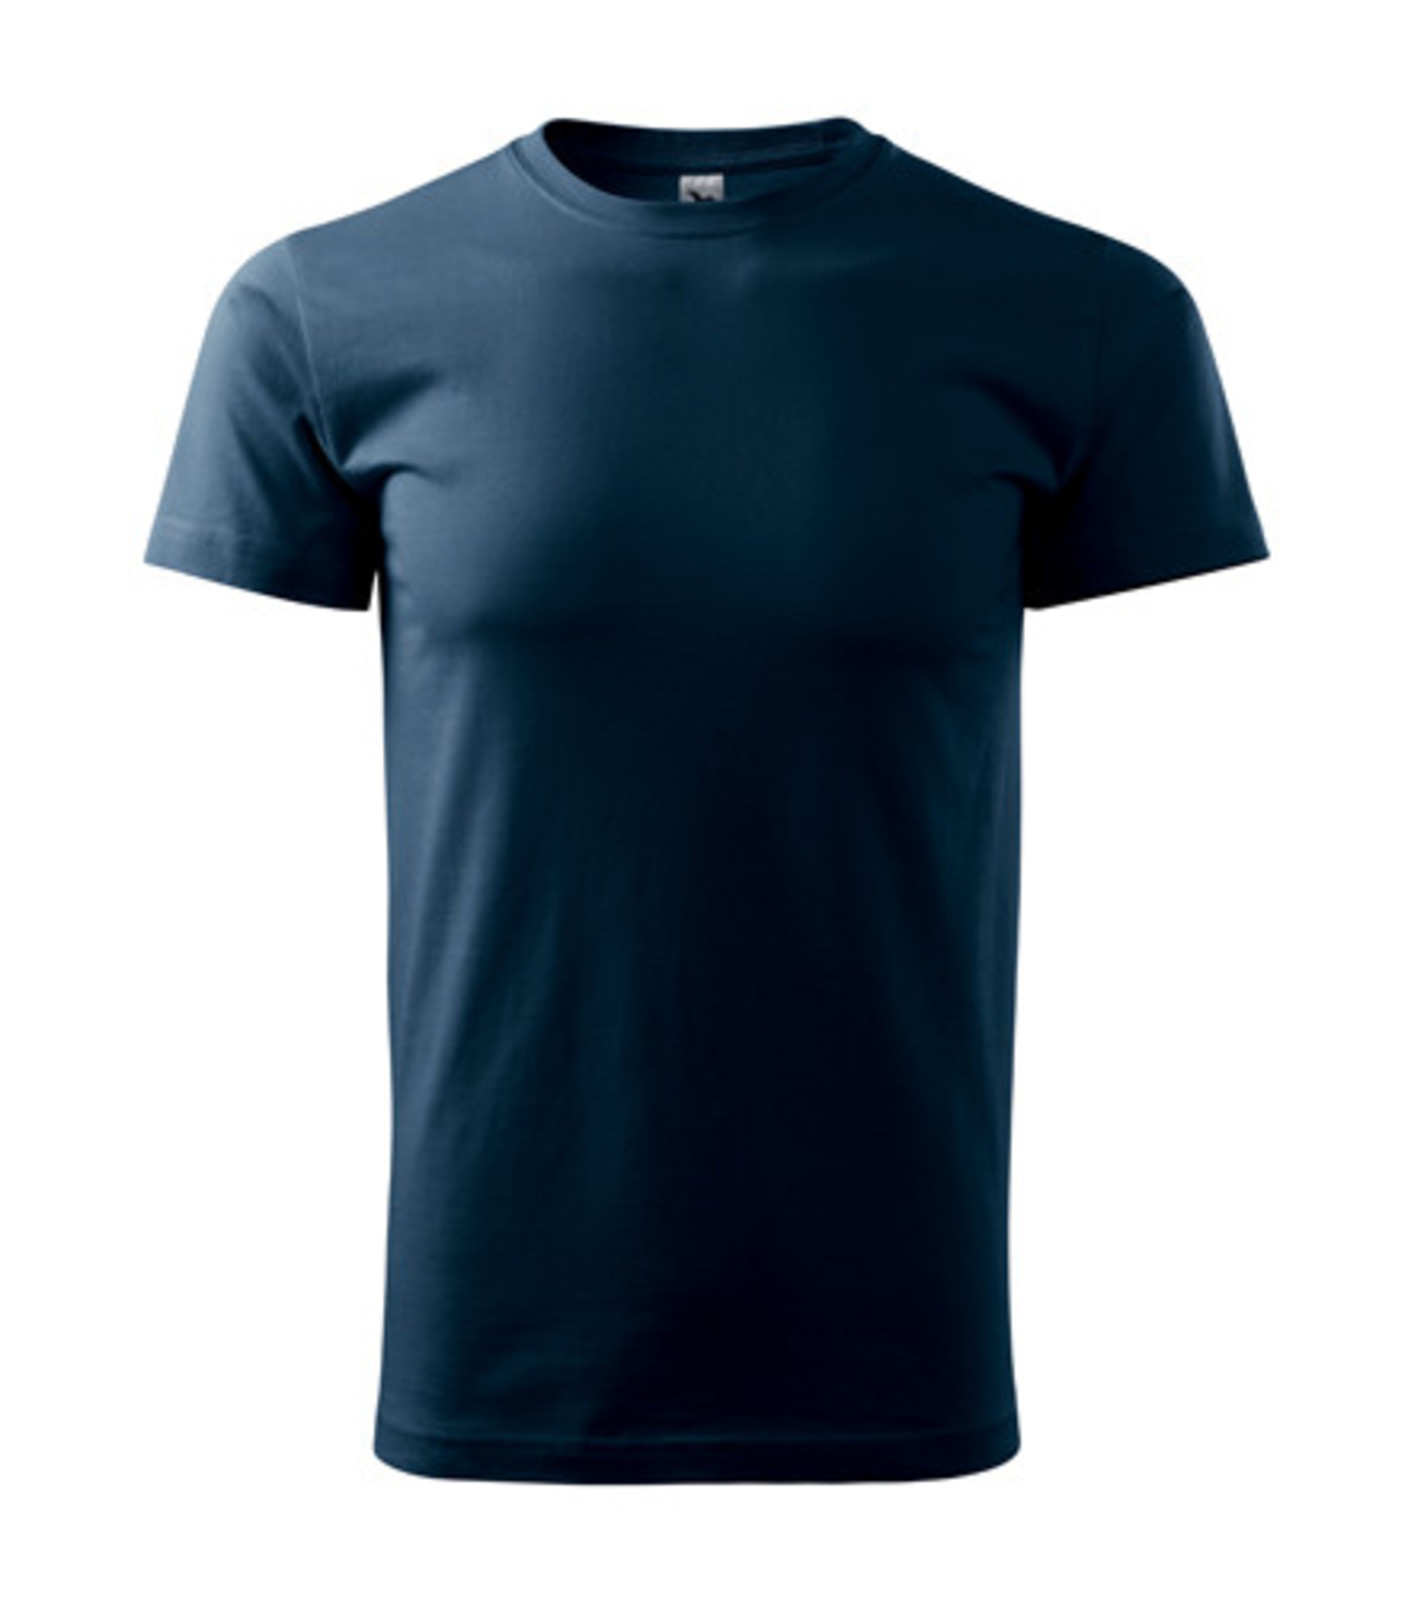 Pánske tričko Malfini Basic 129 - veľkosť: 3XL, farba: tmavo modrá